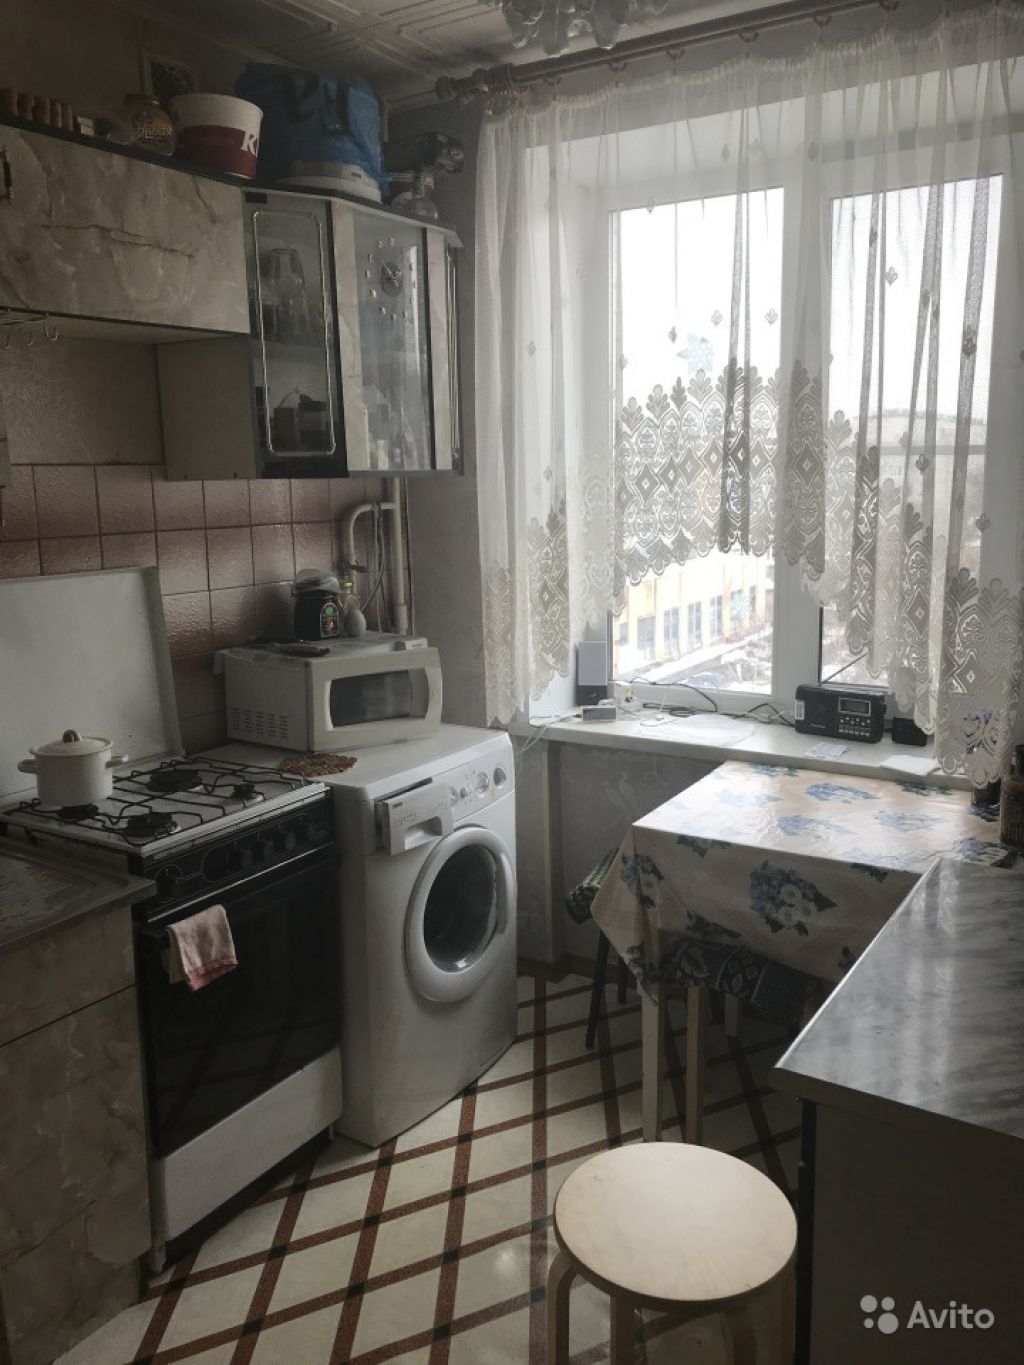 Продам квартиру 2-к квартира 39 м² на 8 этаже 9-этажного кирпичного дома в Москве. Фото 1